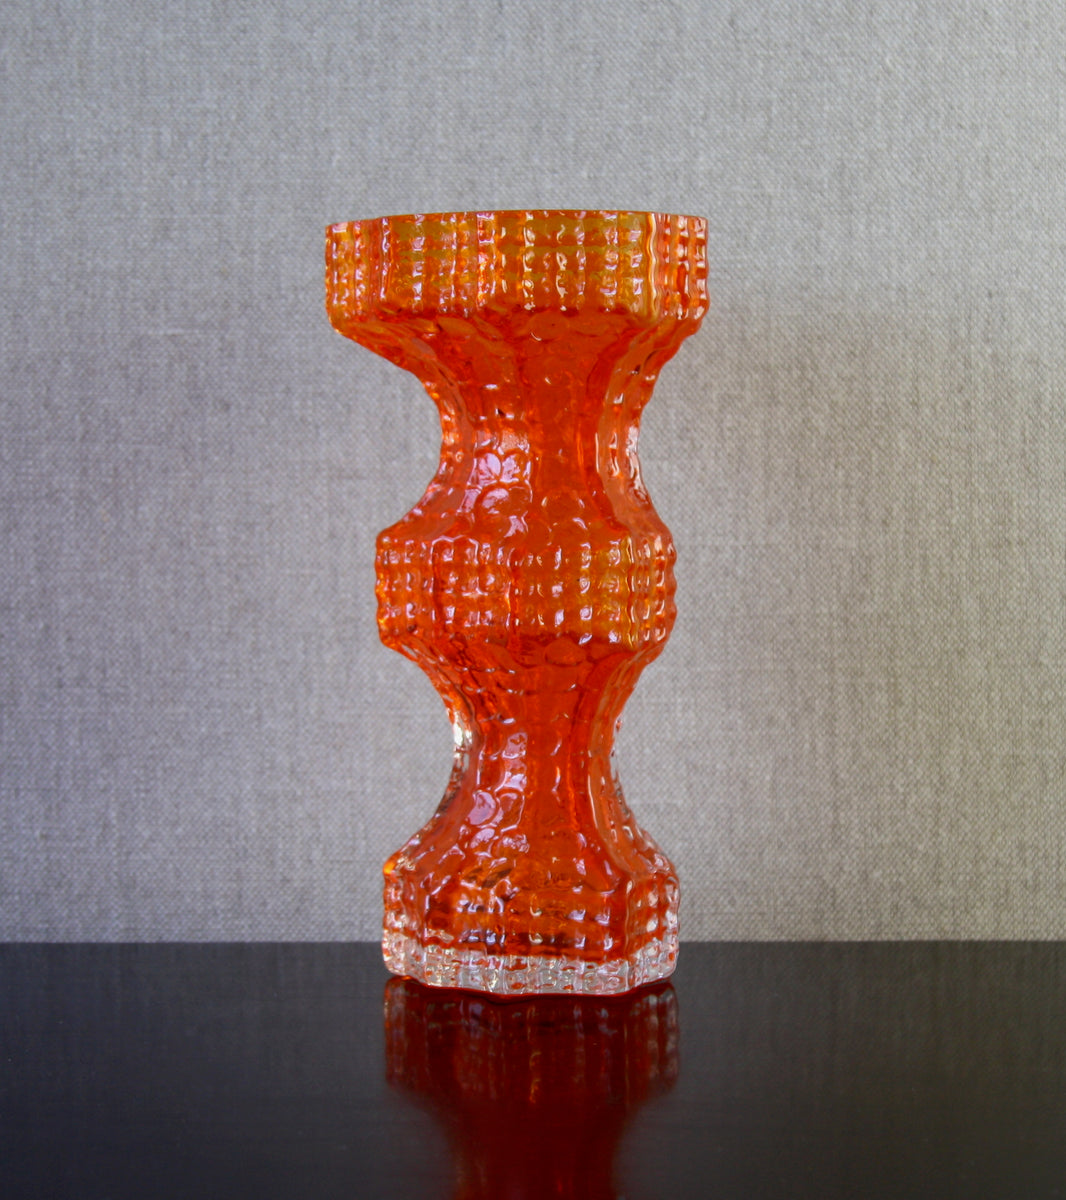 Orange Model 1419 "Fenomena" Vase by Nanny Still, 1967